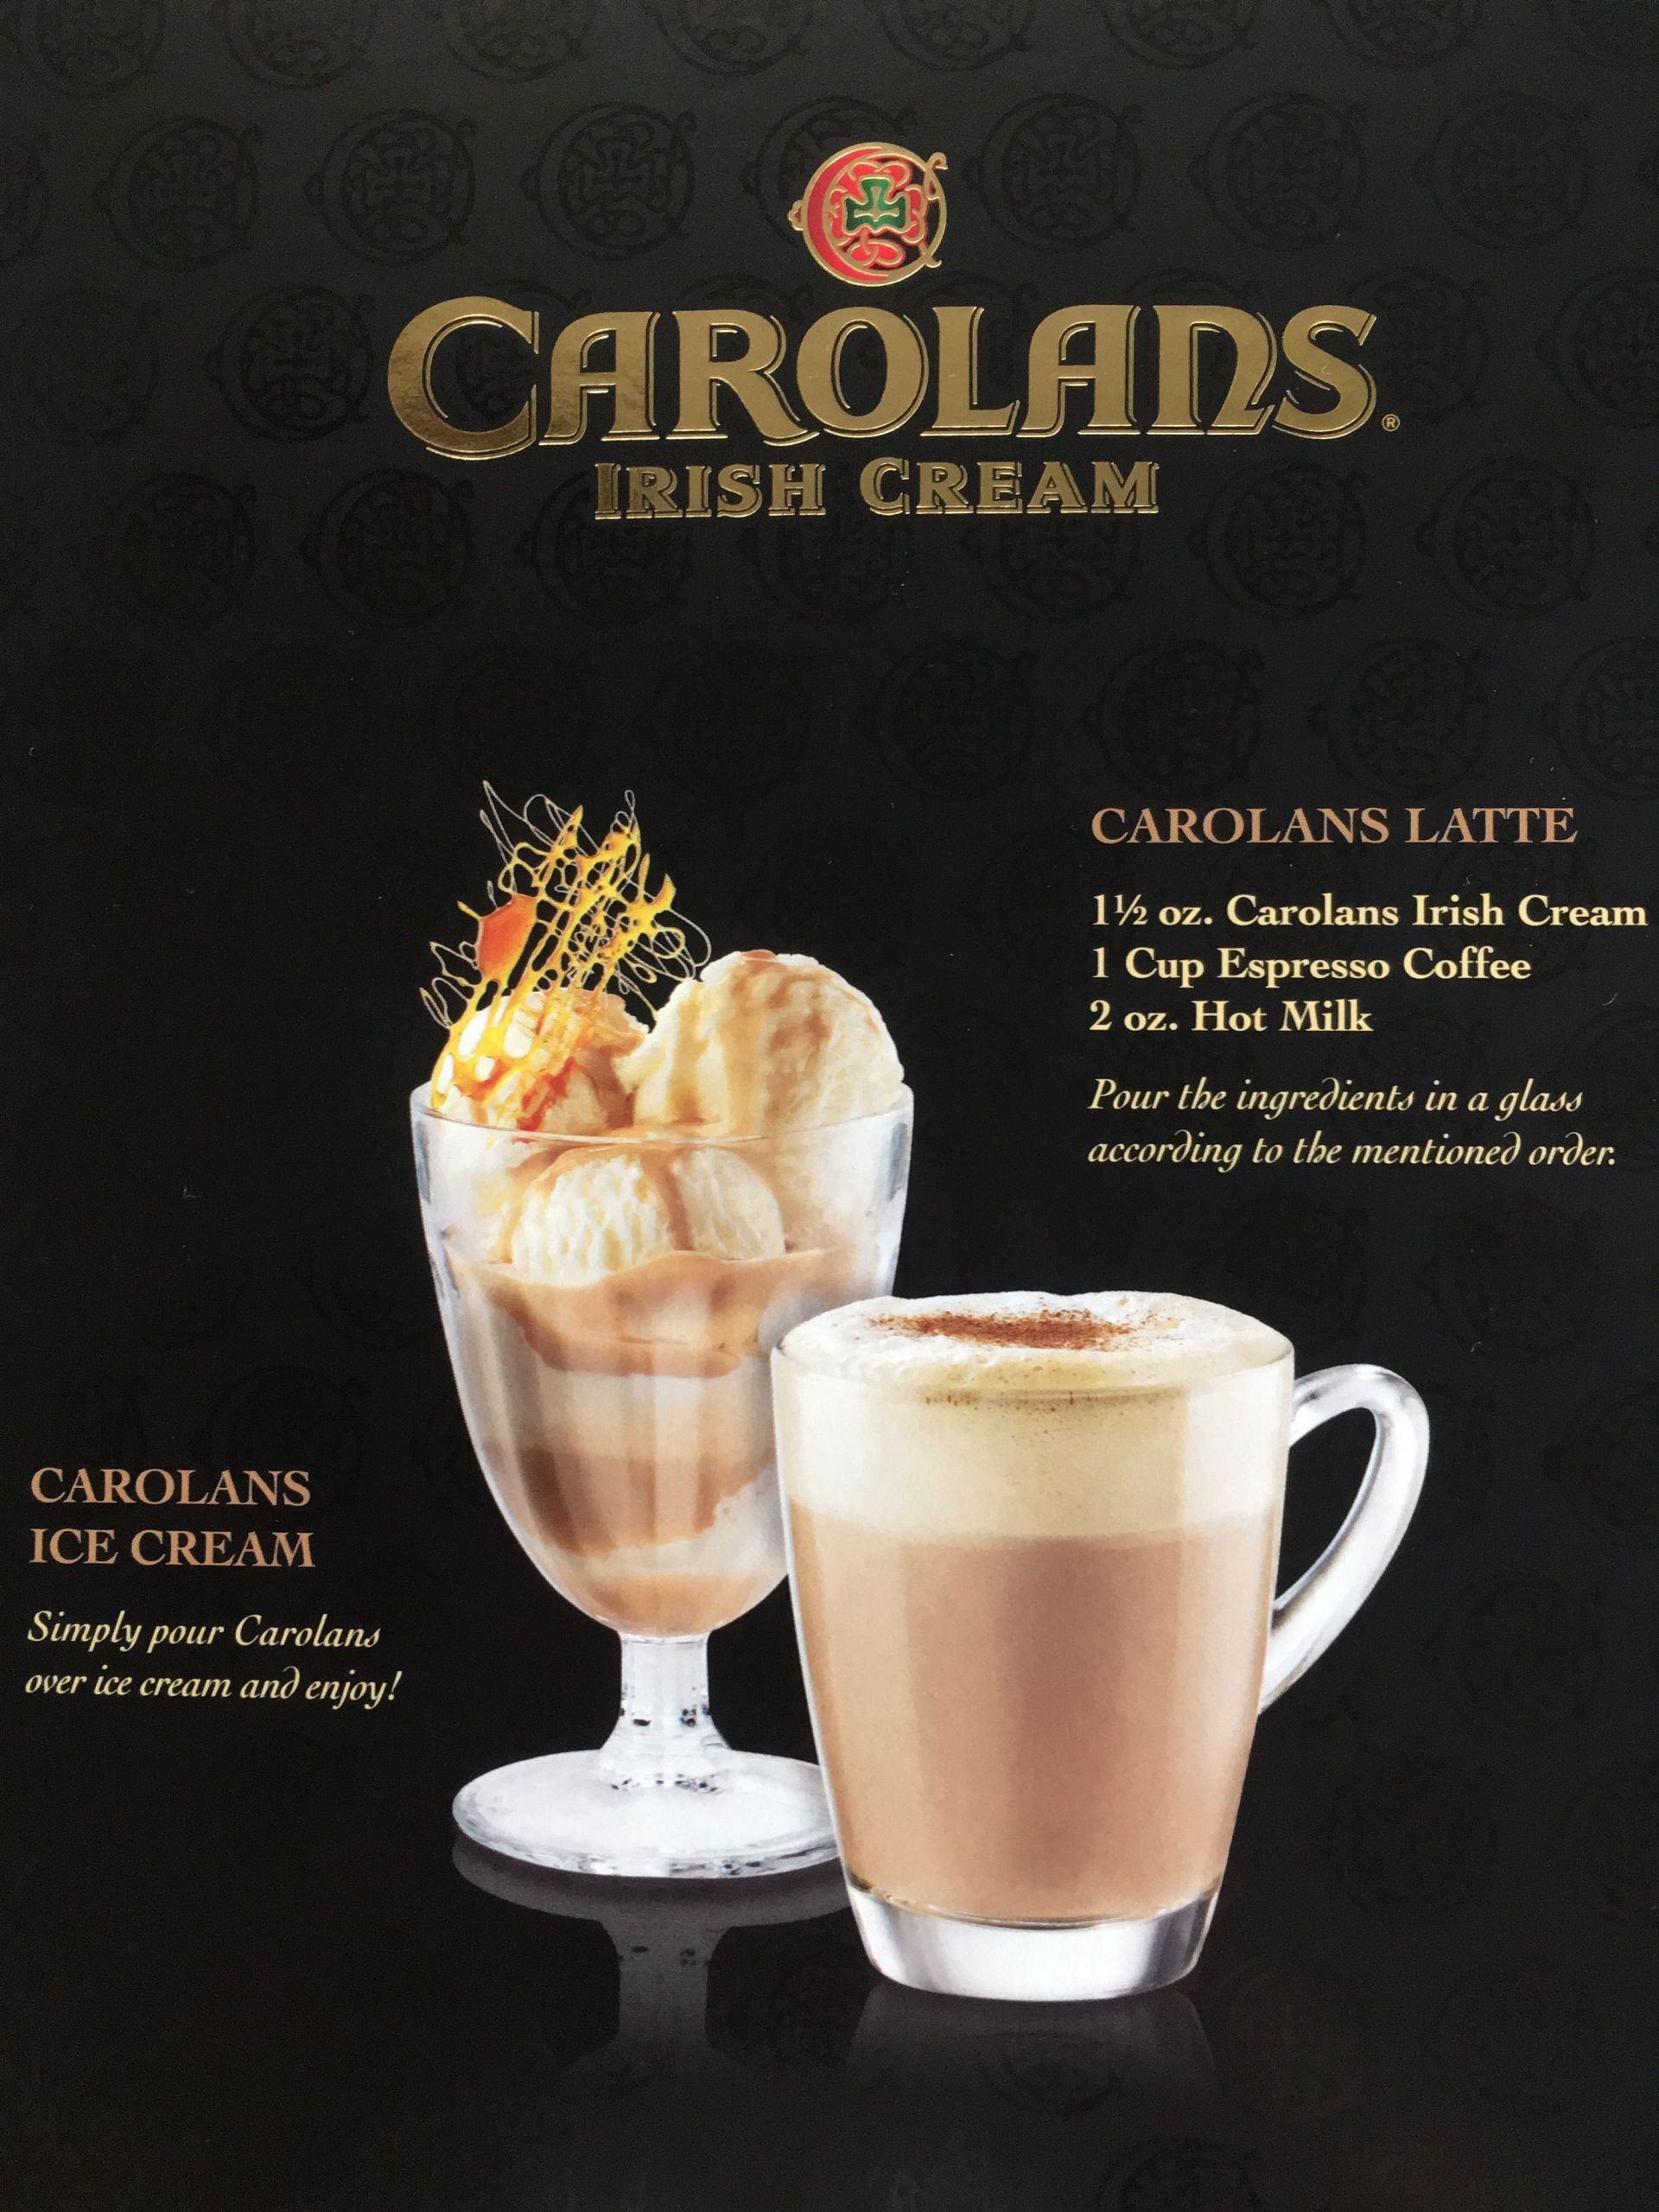 Irish Cream Drink Recipes
 Carolans Irish cream recipe